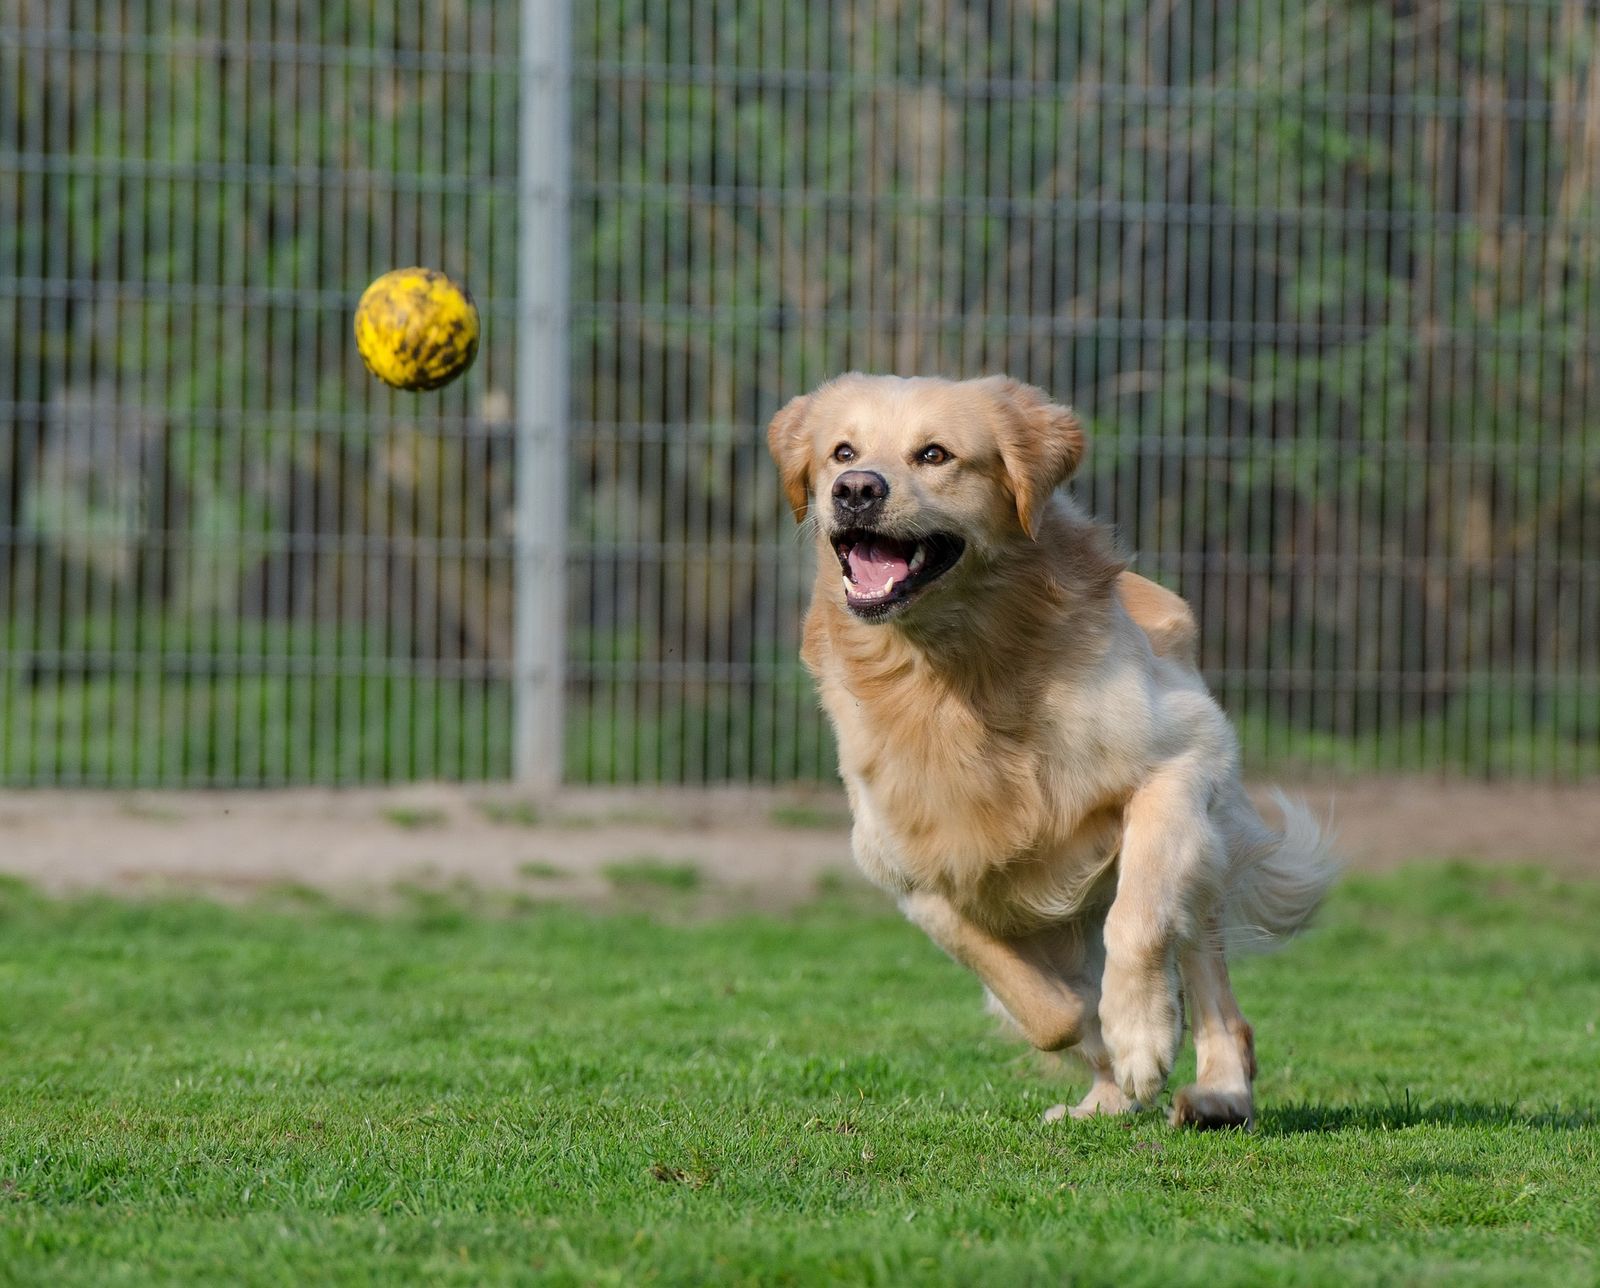 Ein beige Hund der Rasse Golden Retriever läuft auf einer eingezäunten Wiese und fixiert beim Ballhetzen einen gelben Ball.